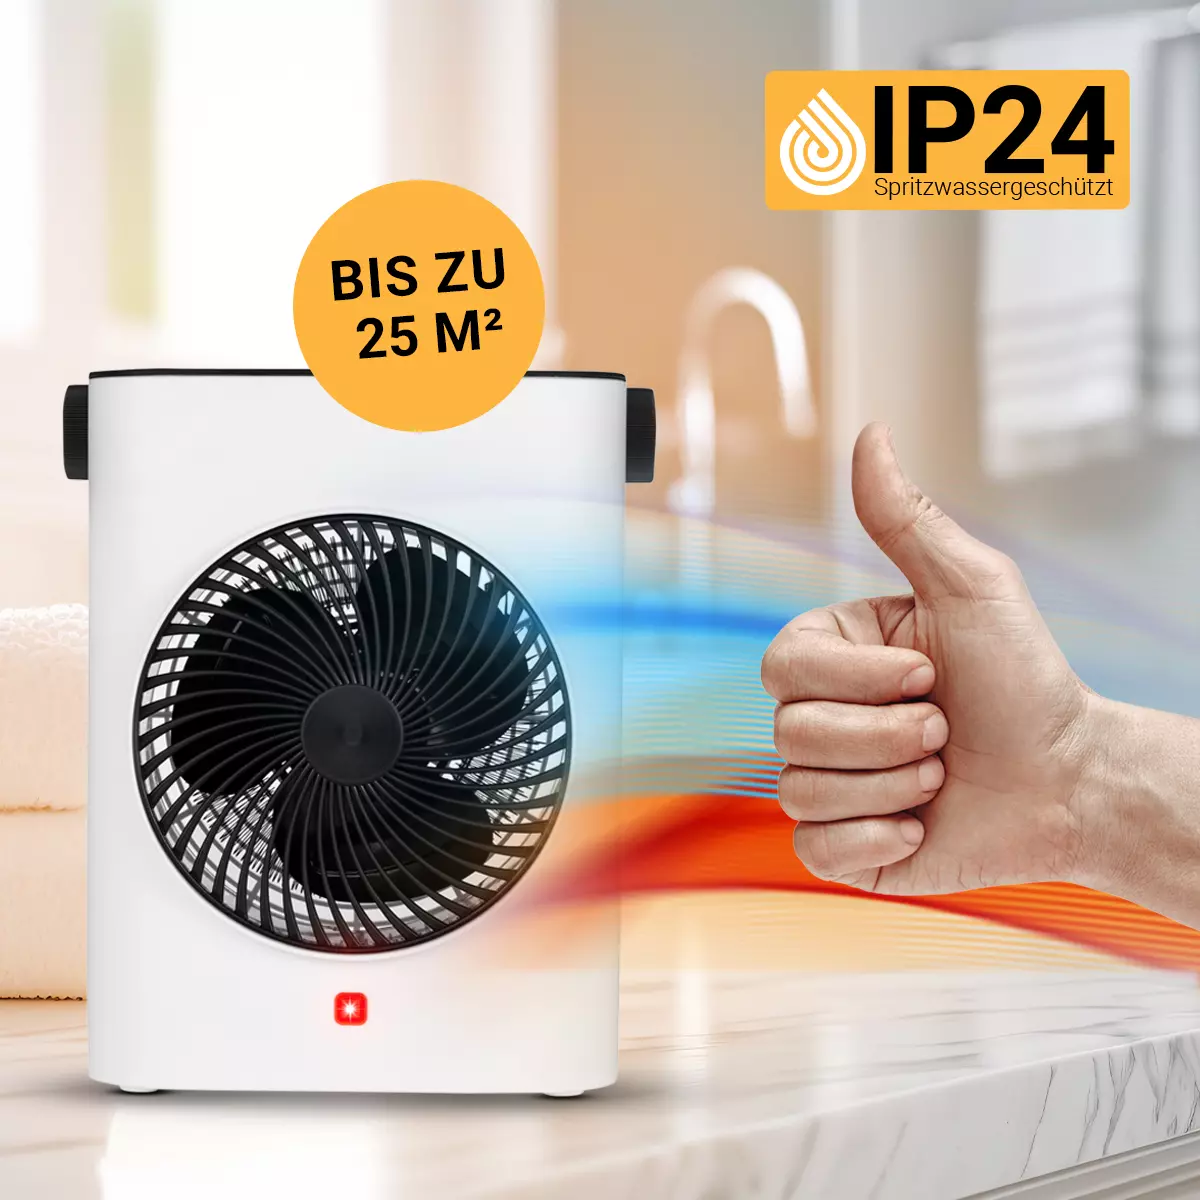 Dzięki ochronie IP24 termowentylator elektryczny idealnie nadaje się również do łazienki